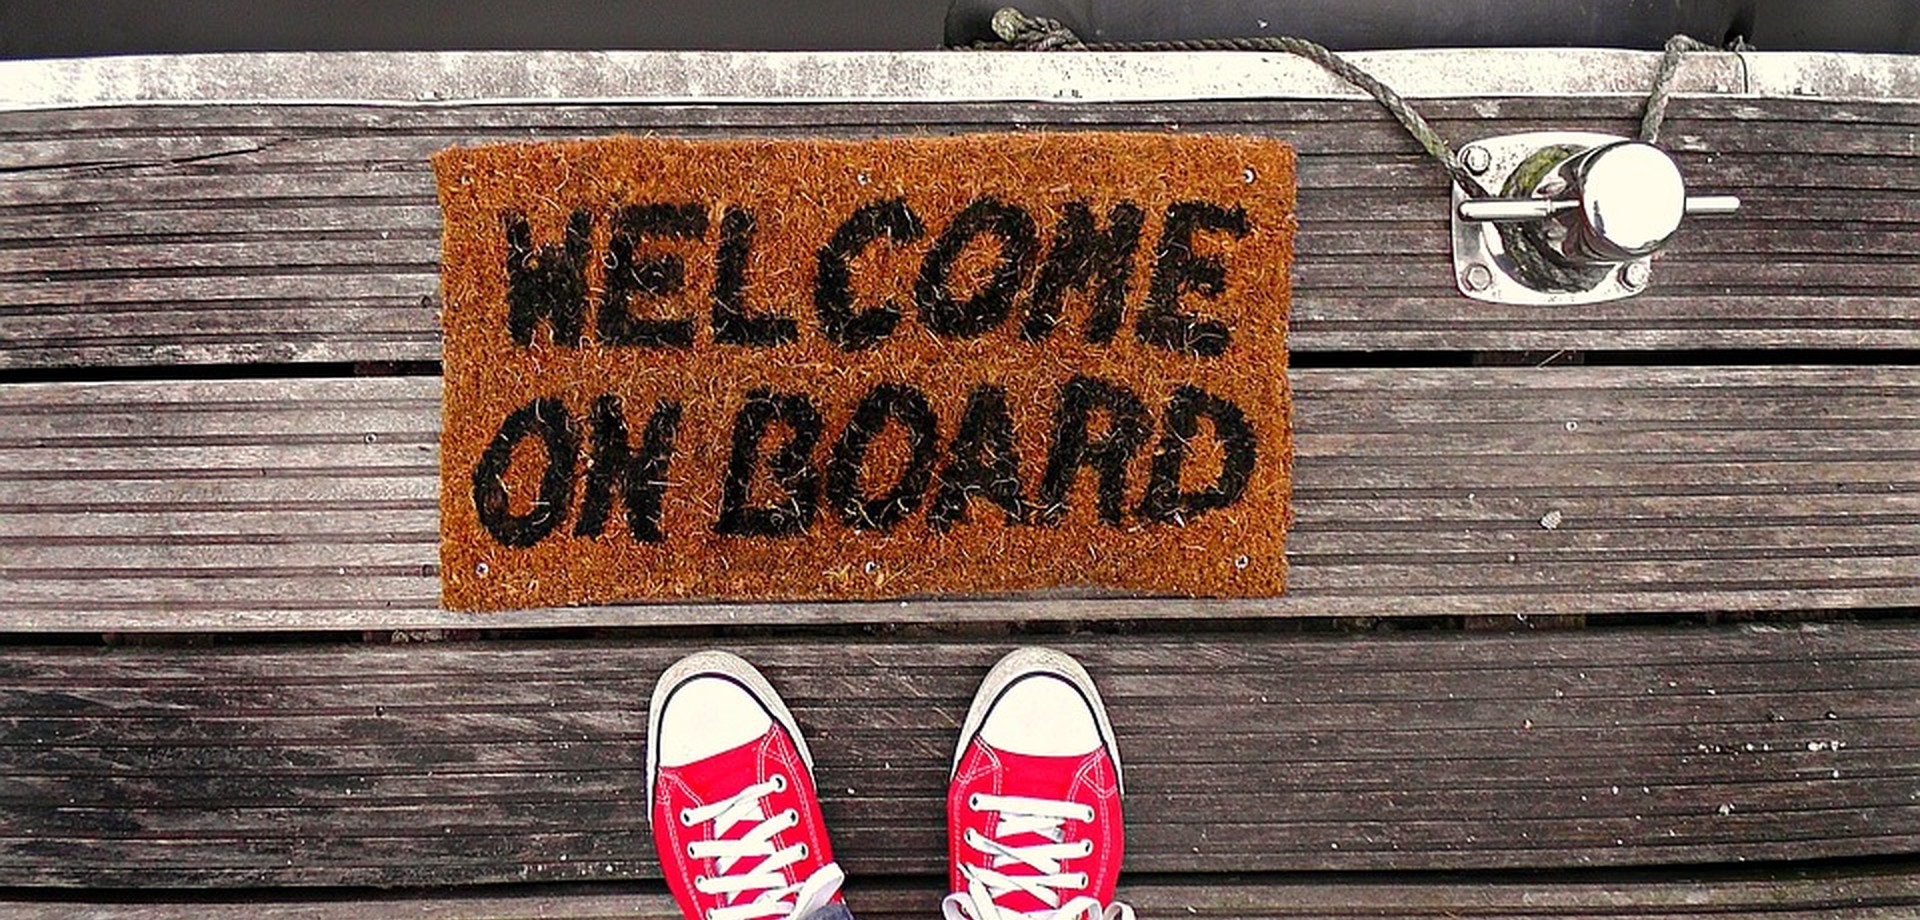 Das Bild zeigt ein paar Turnschuhe die vor einer Fußmatte mit dem Text "Welcome on board" stehen.